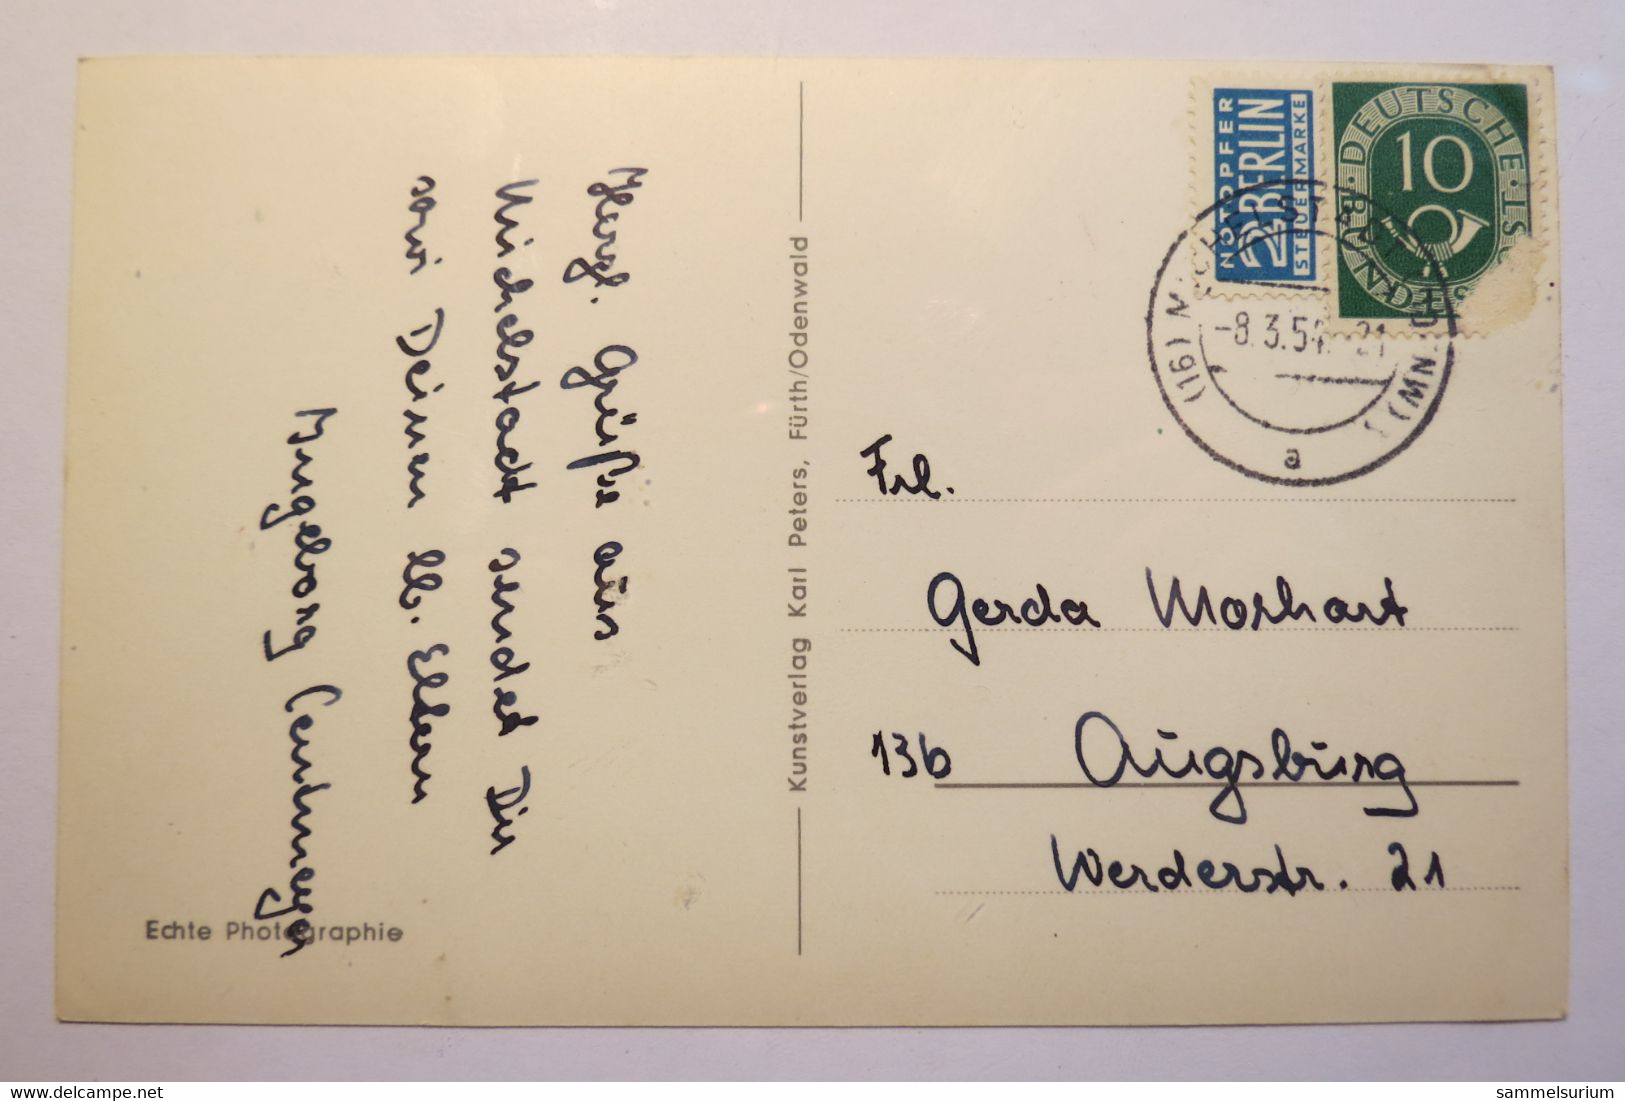 (11/12/82) Postkarte/AK "Michelstadt I. Odenwald" Altes Rathaus Mit Brunnen Um 1950 - Michelstadt